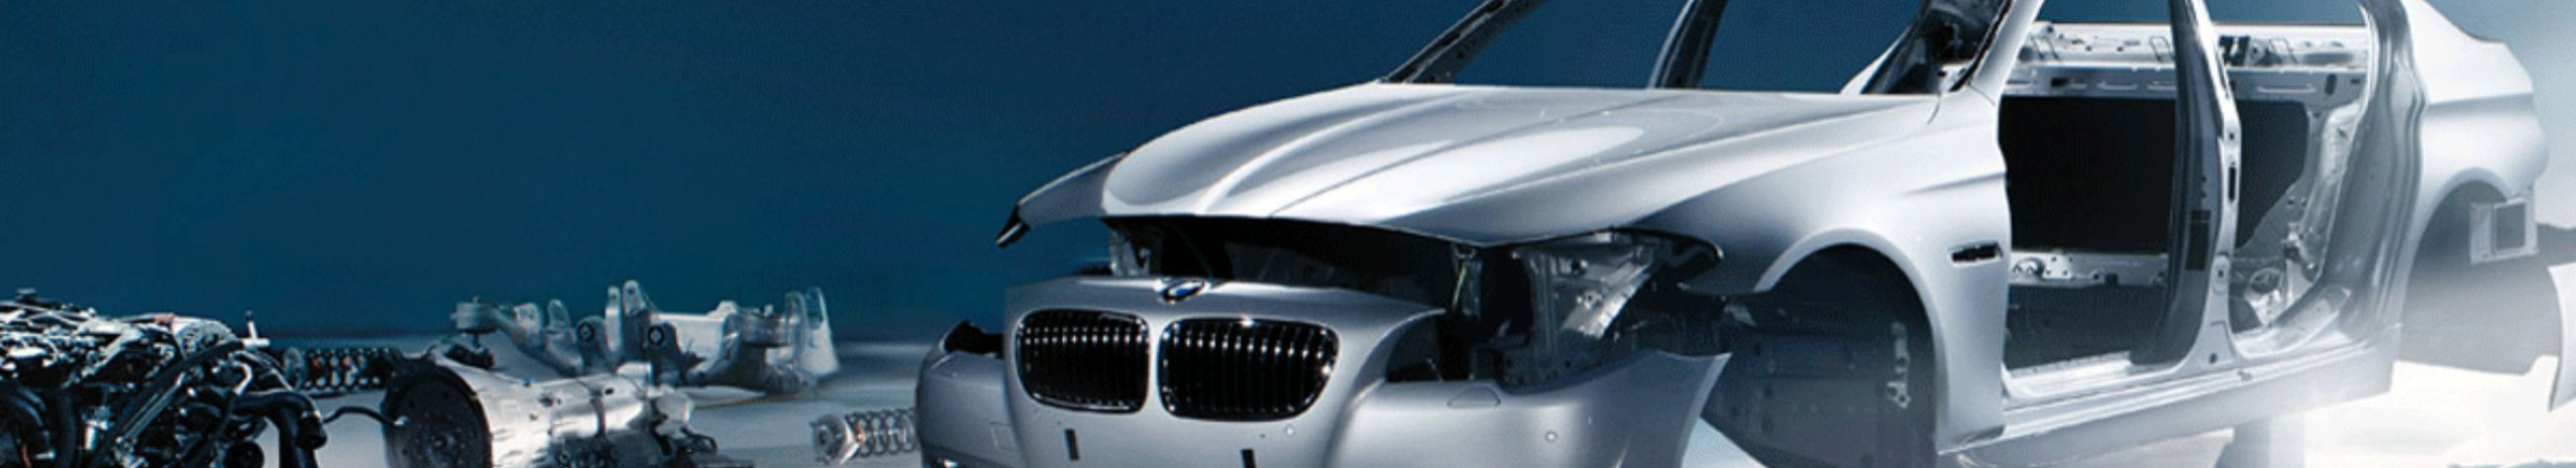 BMW ja Mini originaalosad, kvaliteetsed autovaruosad, õlivahetus BMW-le ja Minile, filtri vahetuse teenus, vastavus auto tootja eeskirjadele, Castrol õlid BMW-le, autohooldus BMW-le ja Minile, õlivahetus ja filtrivahetus, auto tootja soovitatud hooldus, auto diagnostika ja programmeerimine